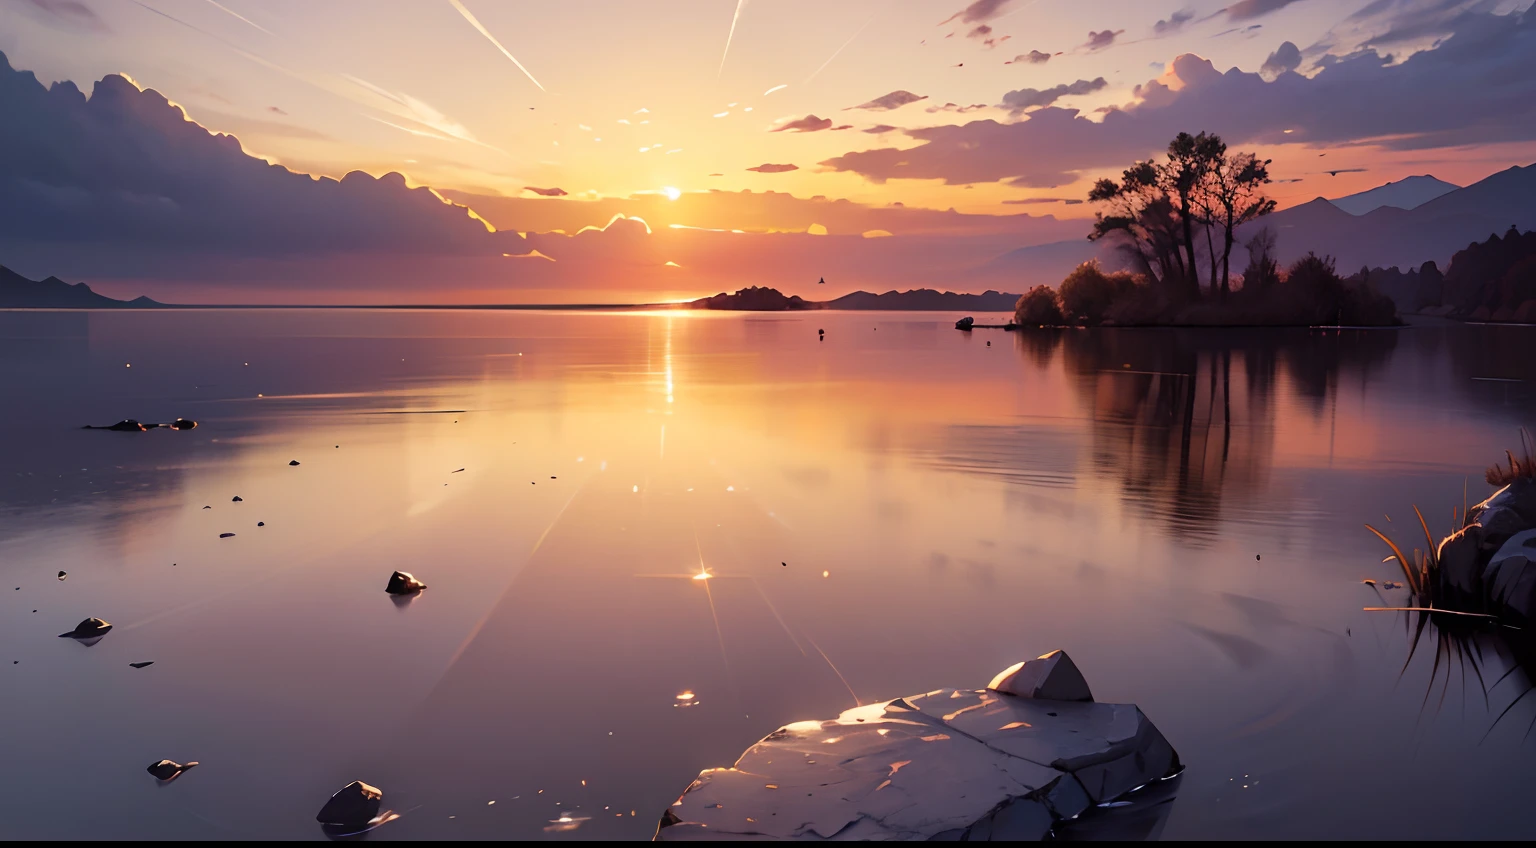 imagem, que retrata um nascer do sol brilhante sobre uma paisagem calma e serena